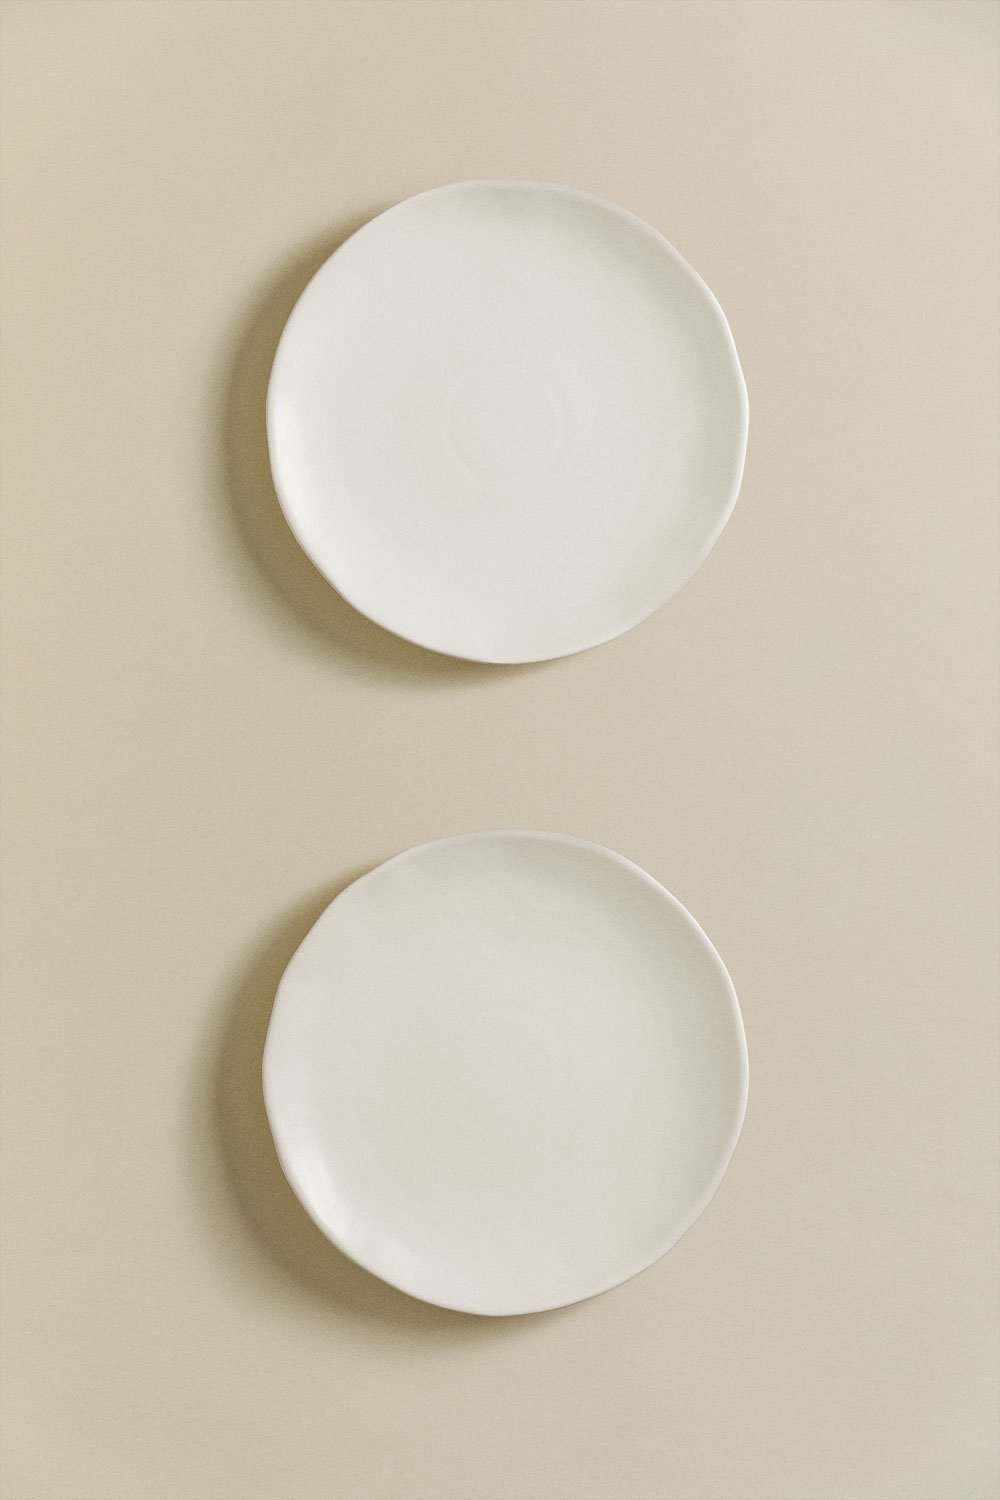 Lot de 2 assiettes plates Belvere, image de la galerie 2